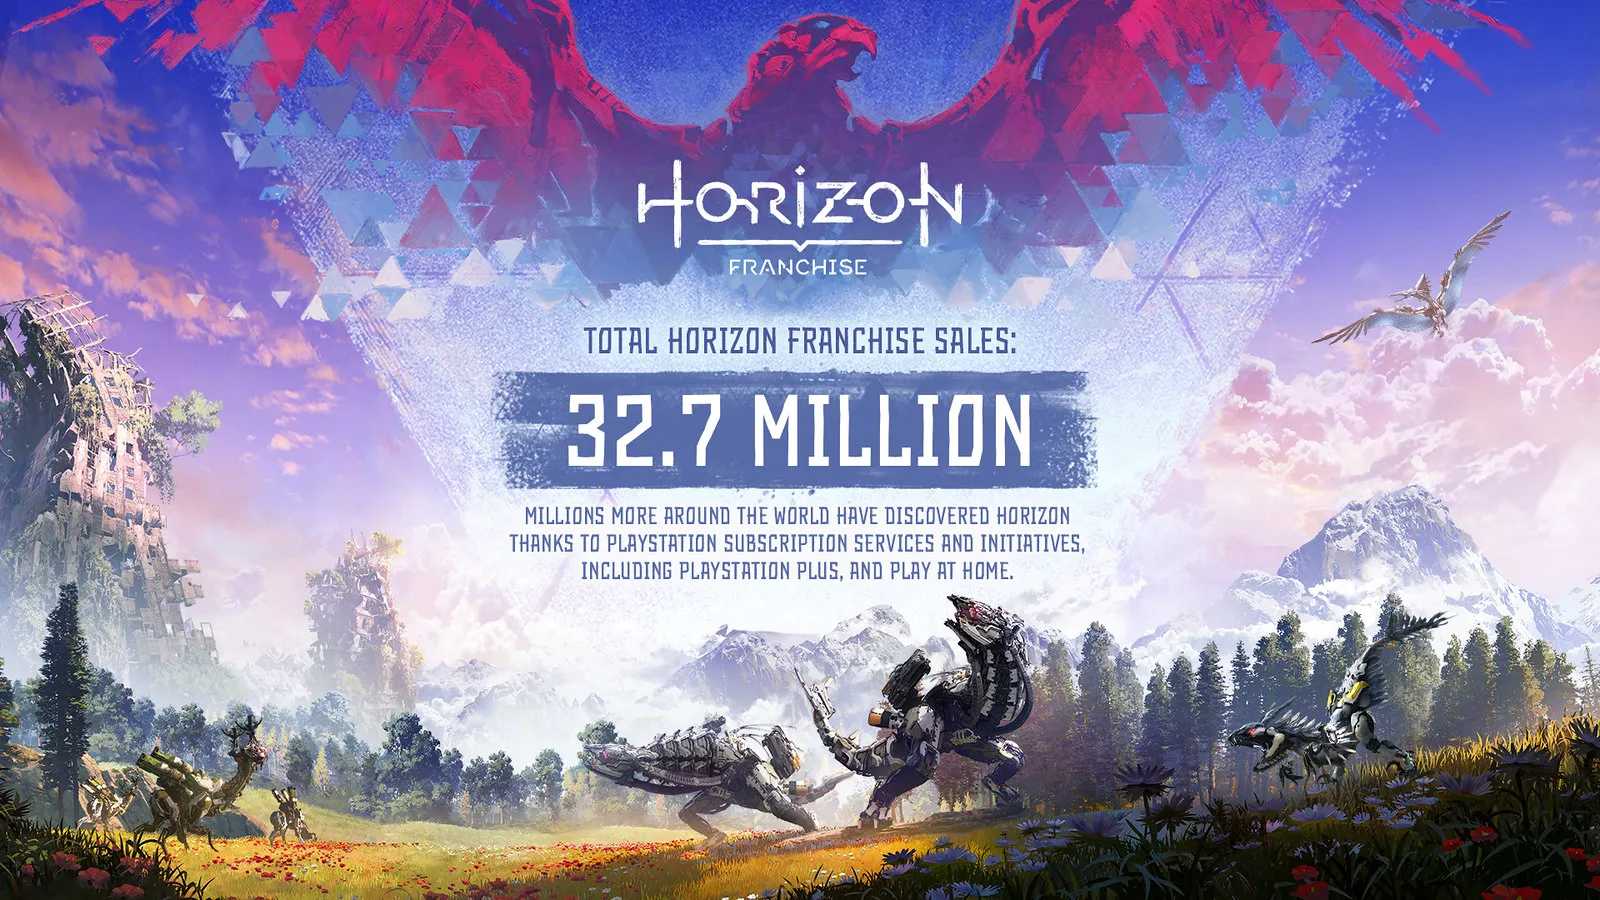 Sérii Horizon od Guerrilla Games se prodejně velmi daří, jaké jsou statistiky?